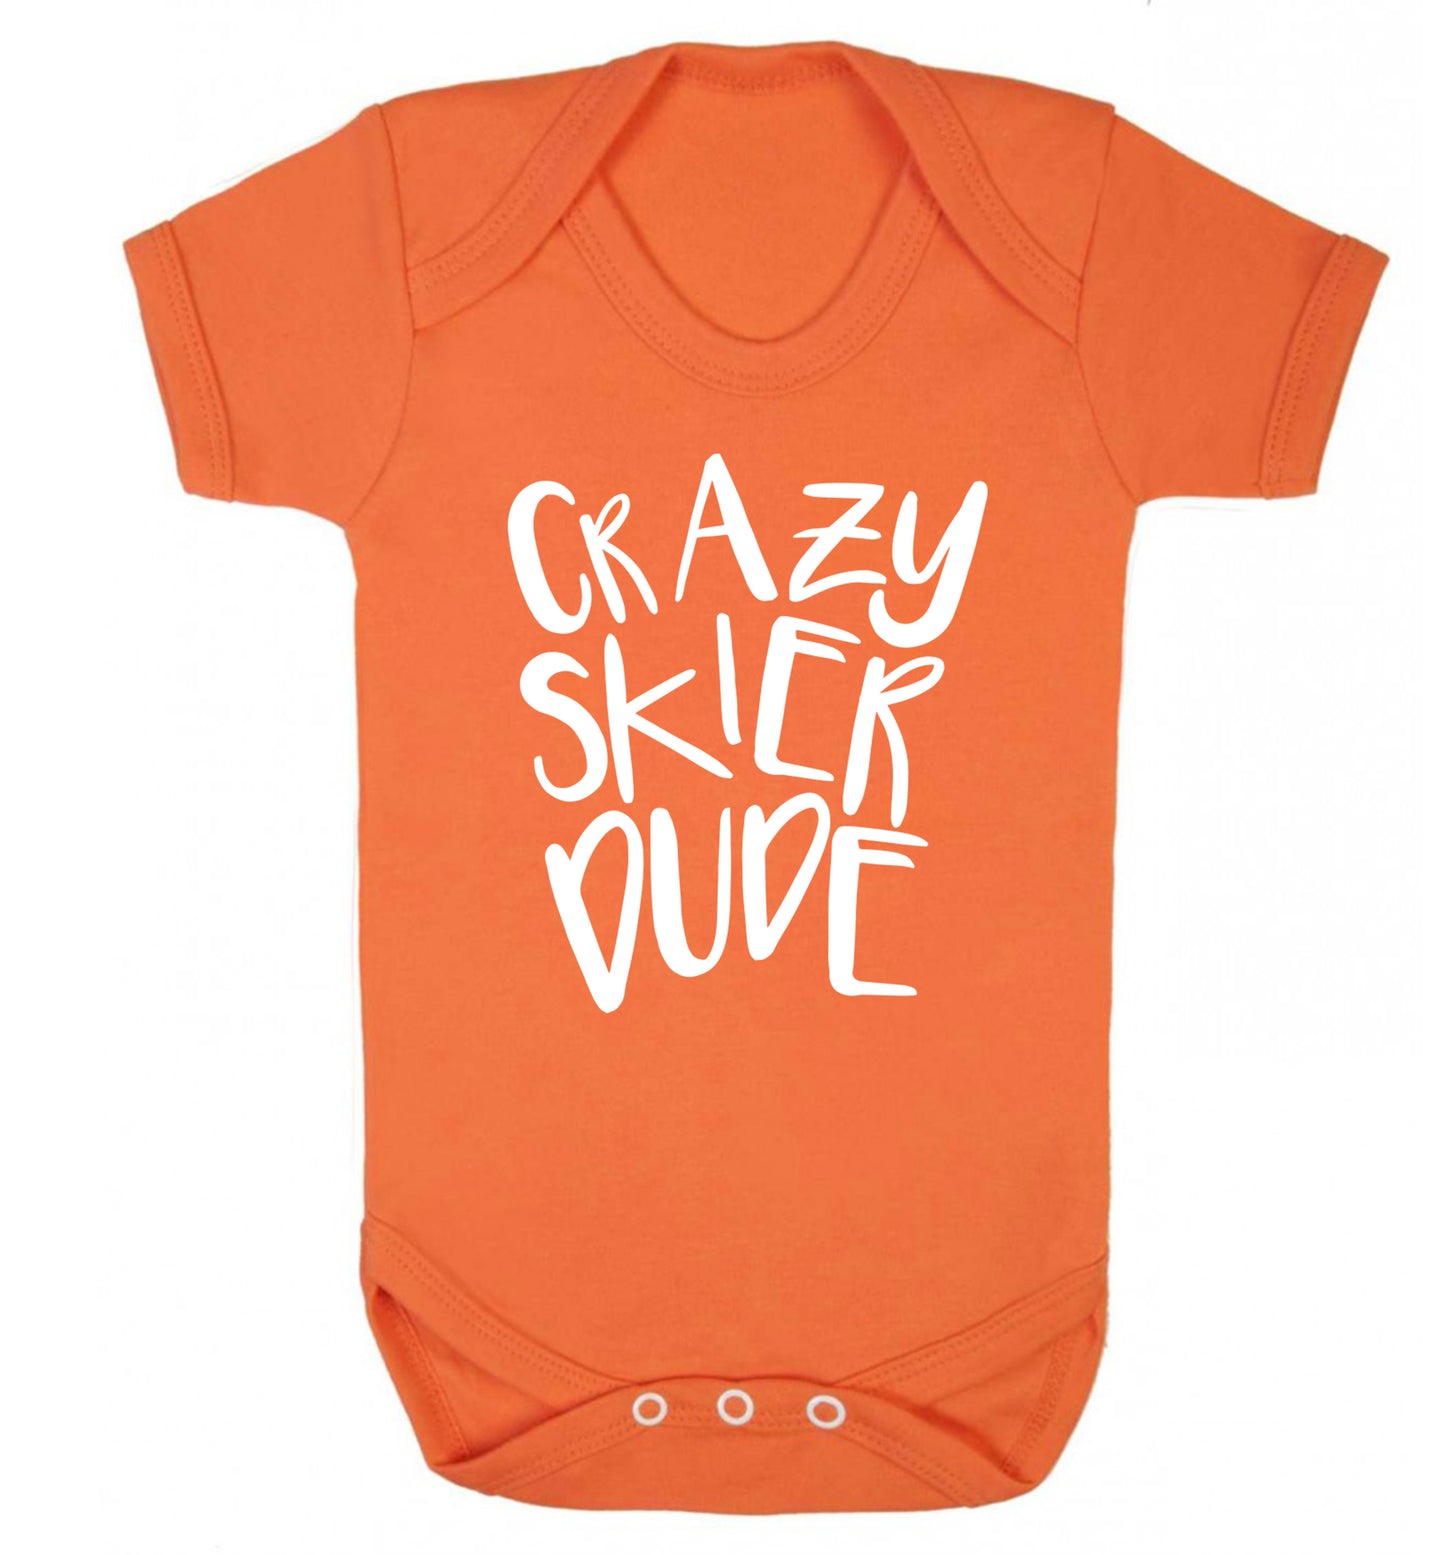 Crazy skier dude Baby Vest orange 18-24 months